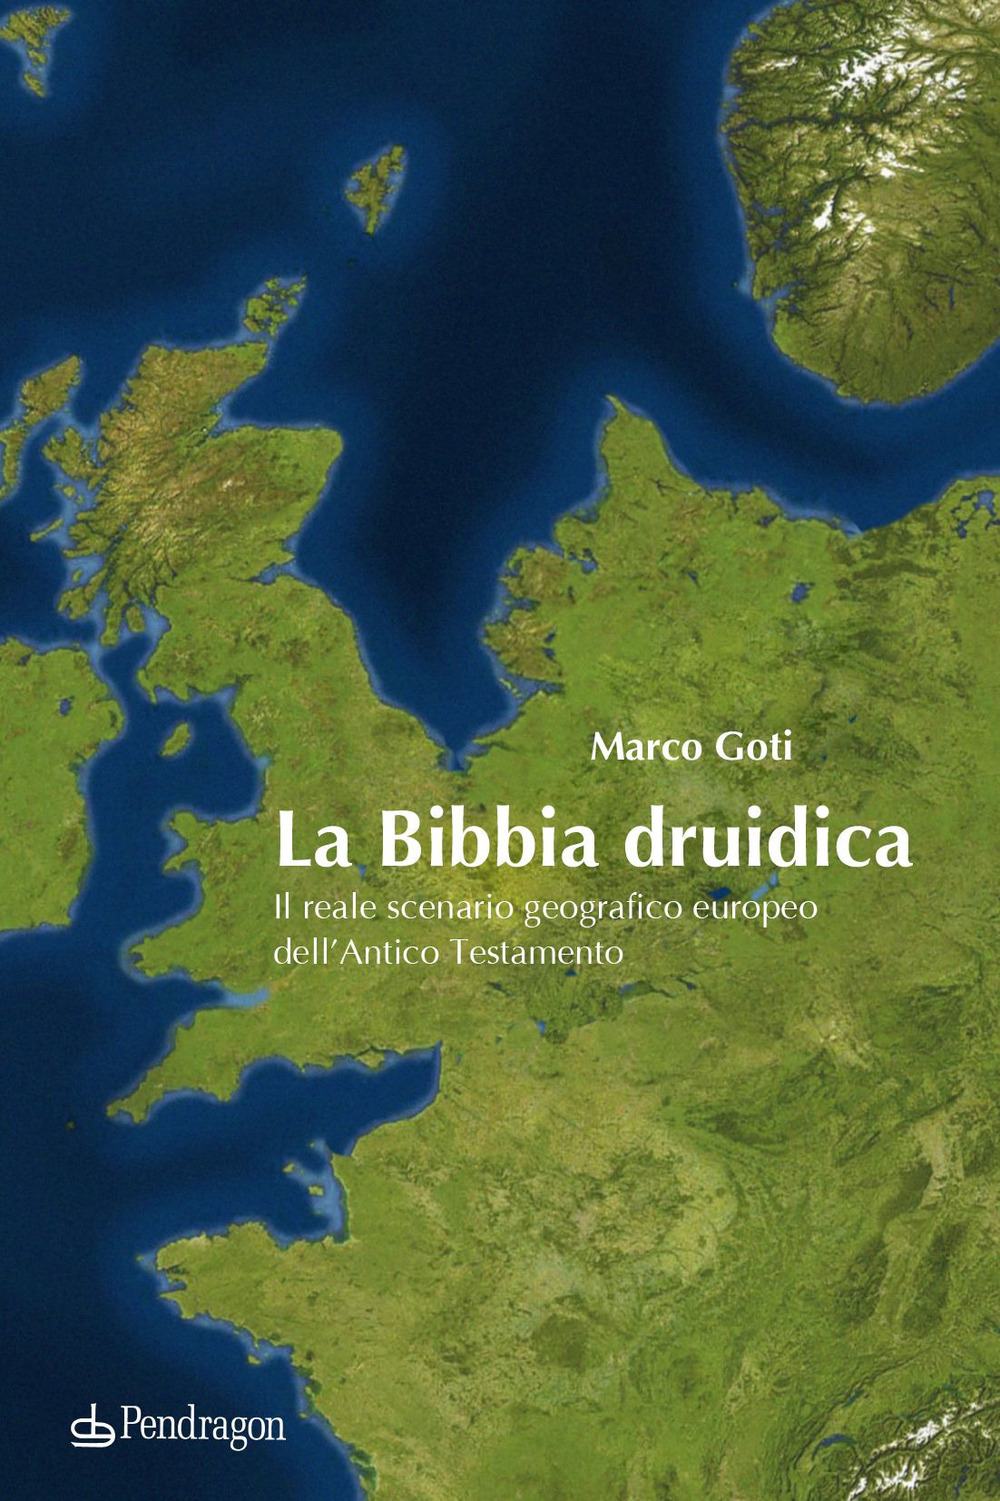 La Bibbia druidica. Il reale scenario geografico europeo nell'Antico Testamento